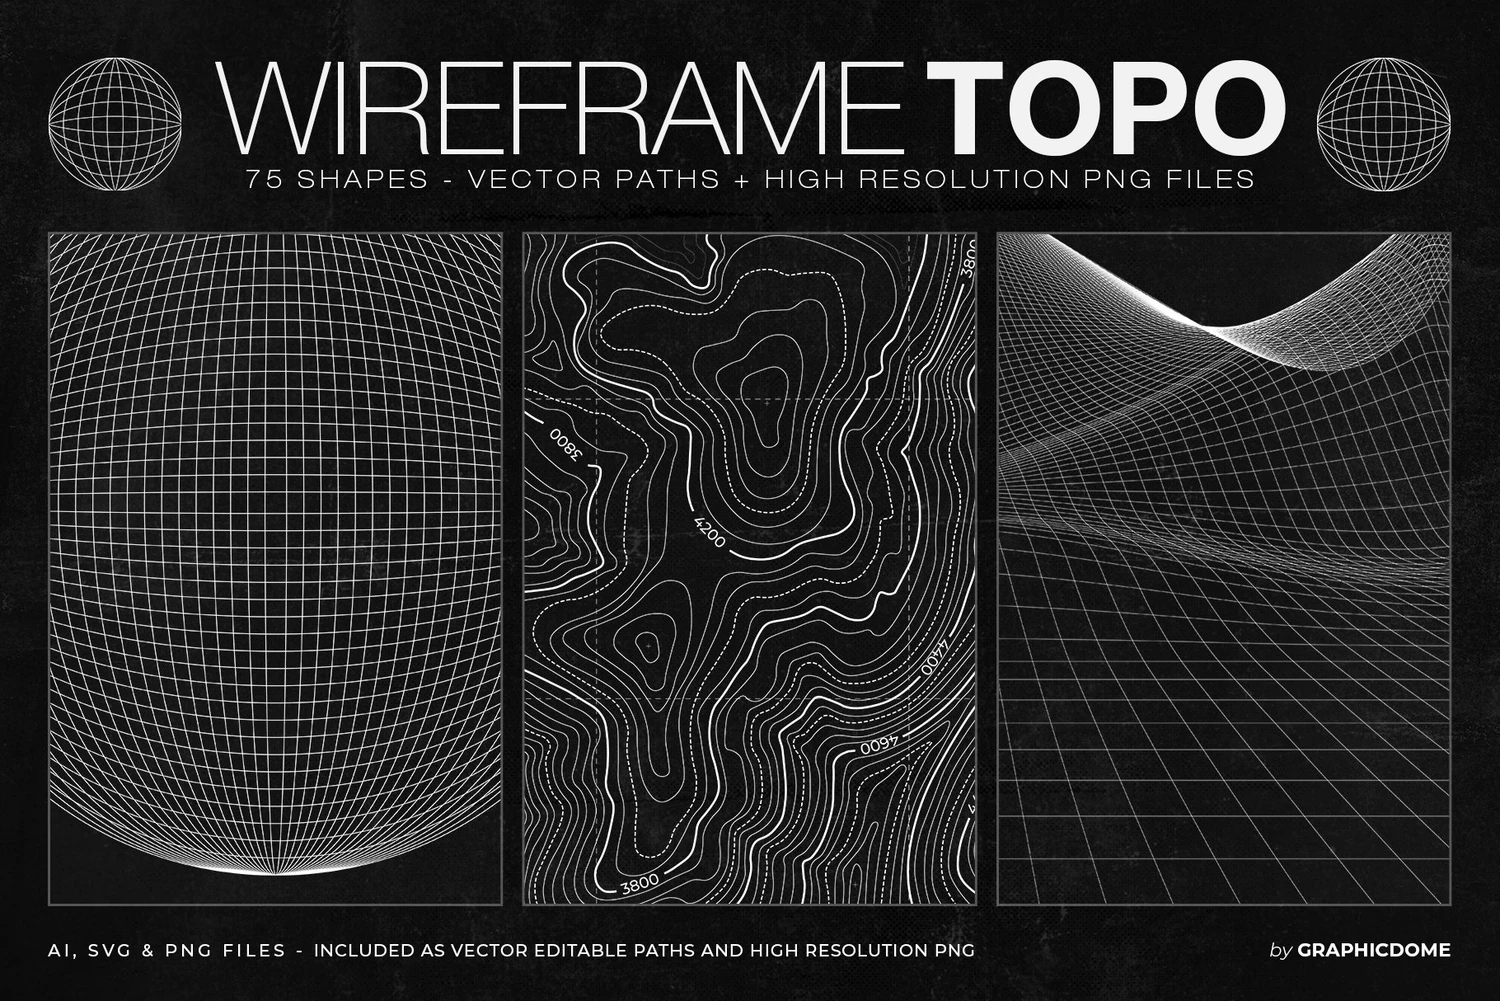 5301 75款复古潮流科幻机能电竞游戏波浪网格地形背景几何图形矢量素材 75 Wireframe Topo Elements Vectors@GOOODME.COM